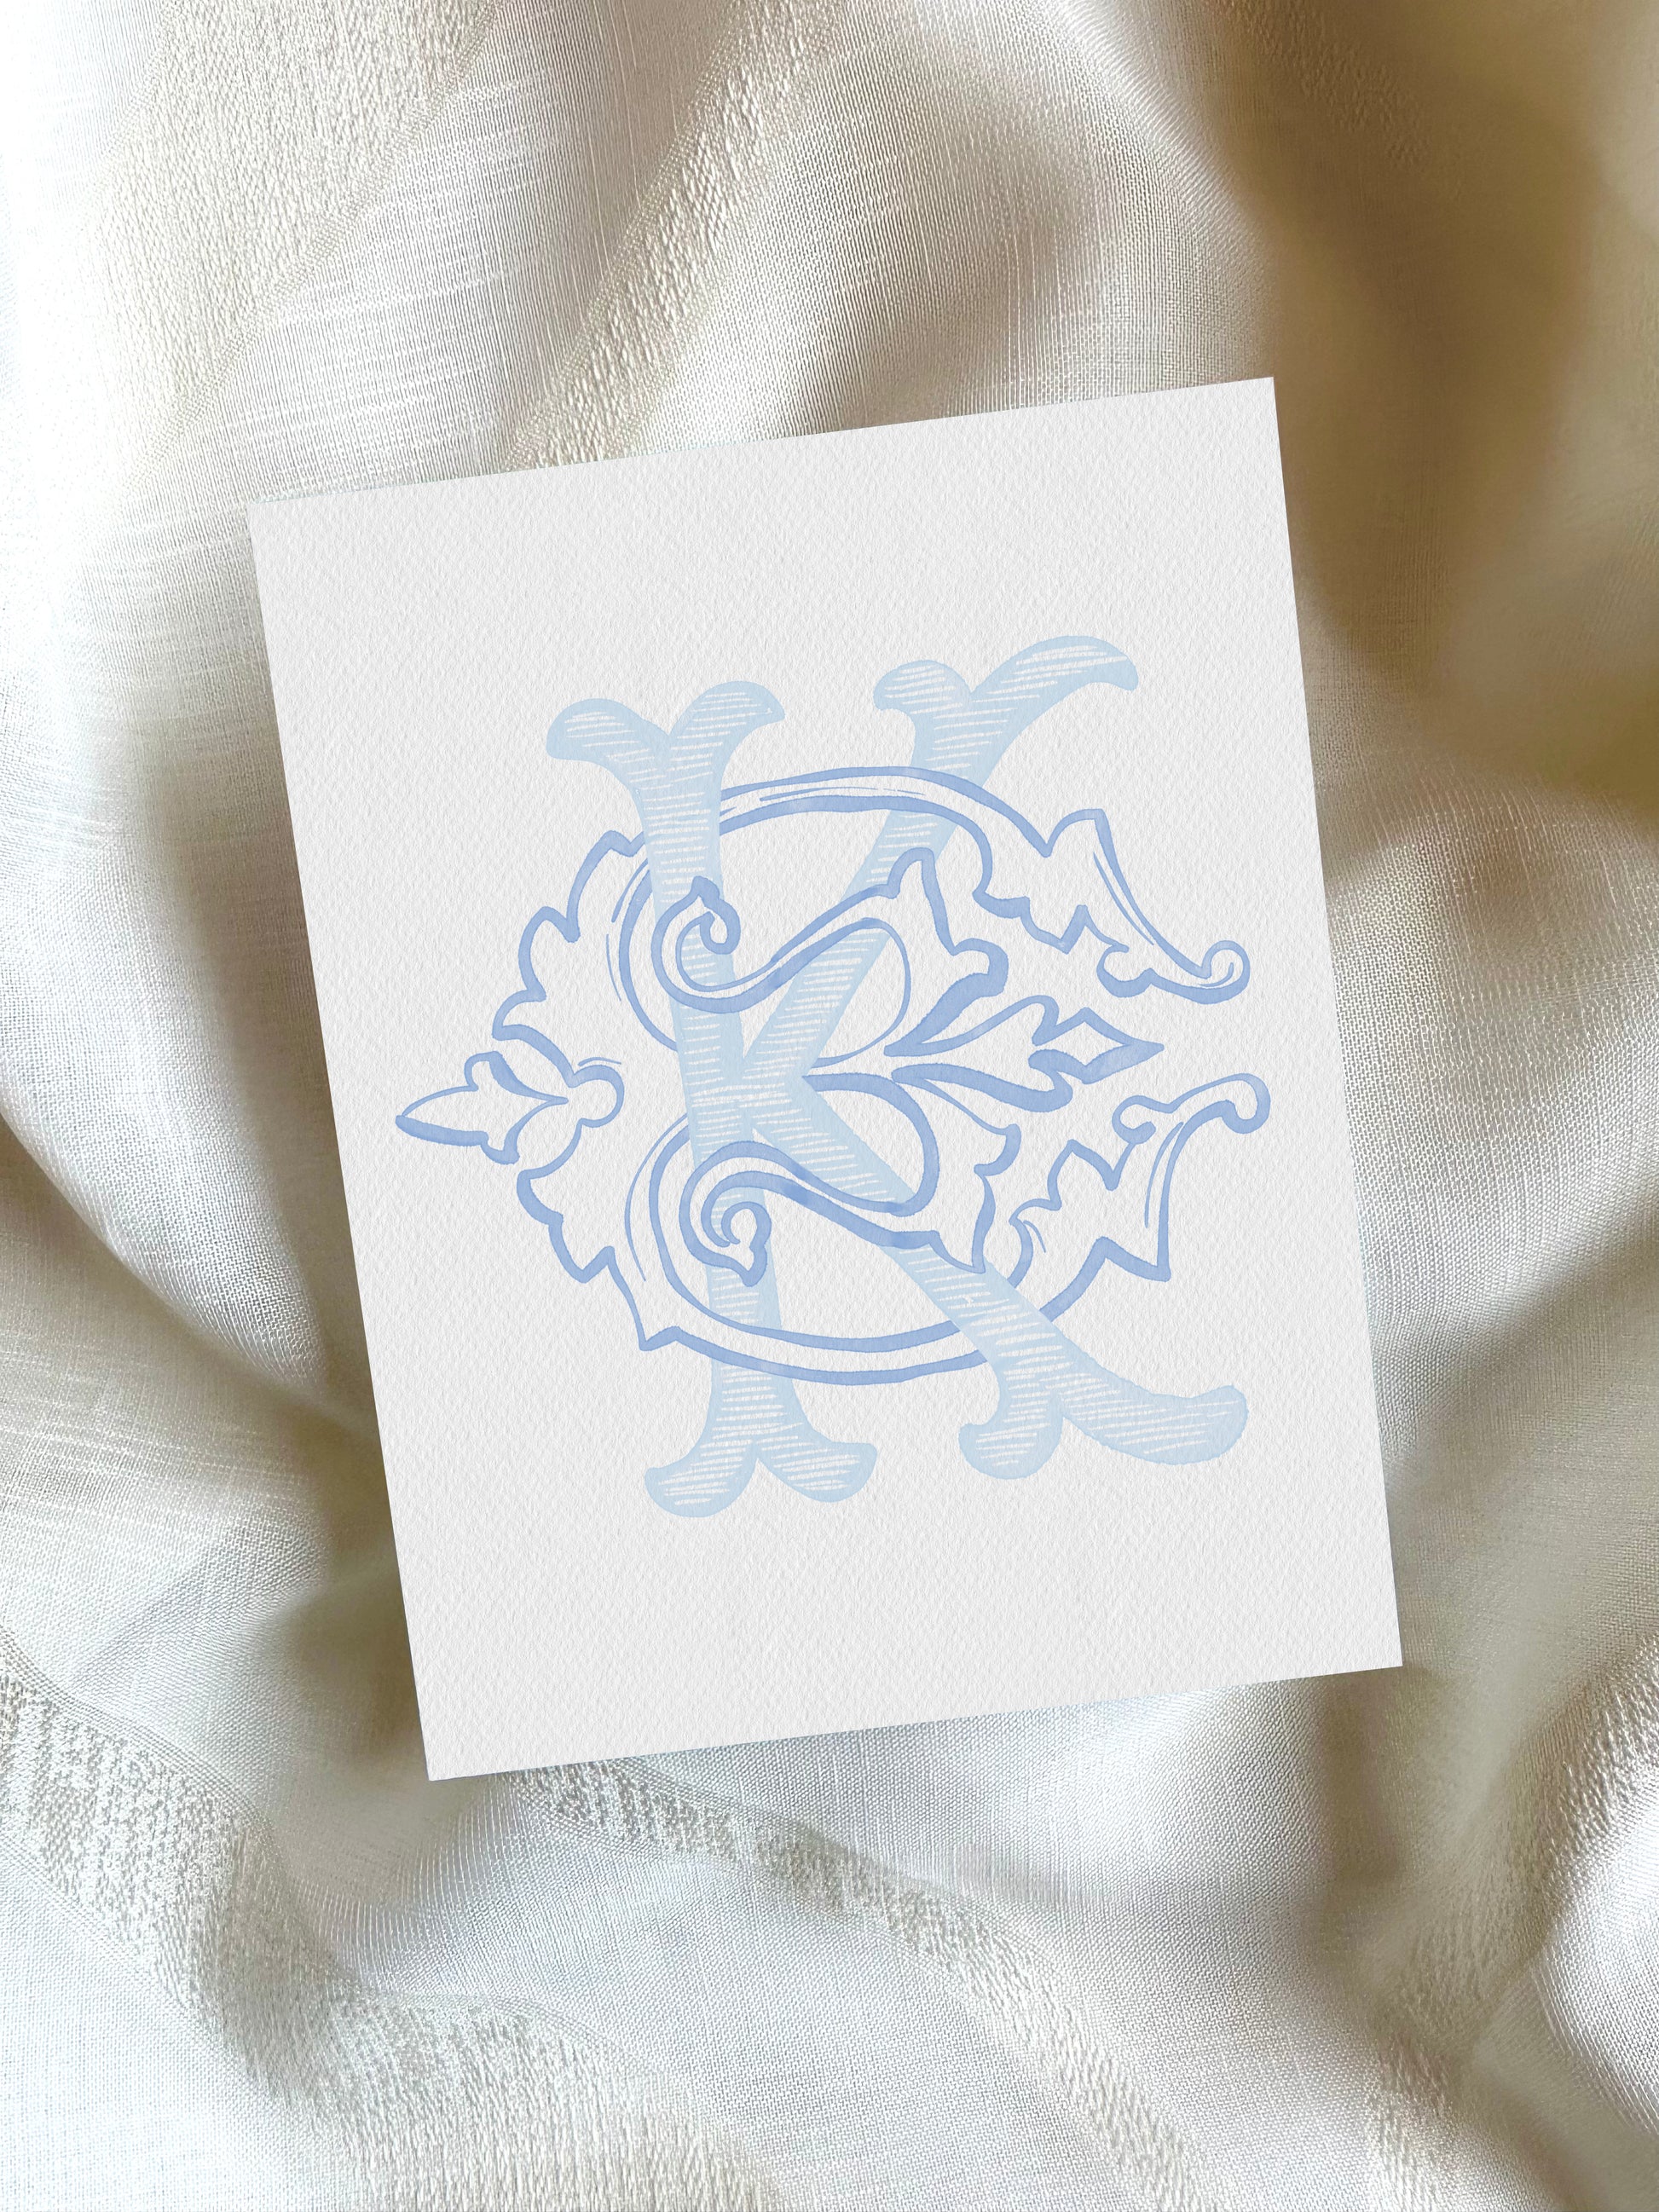 2 Letter Monogram with Letters KE EK | Digital Download - Wedding Monogram SVG, Personal Logo, Wedding Logo for Wedding Invitations The Wedding Crest Lab